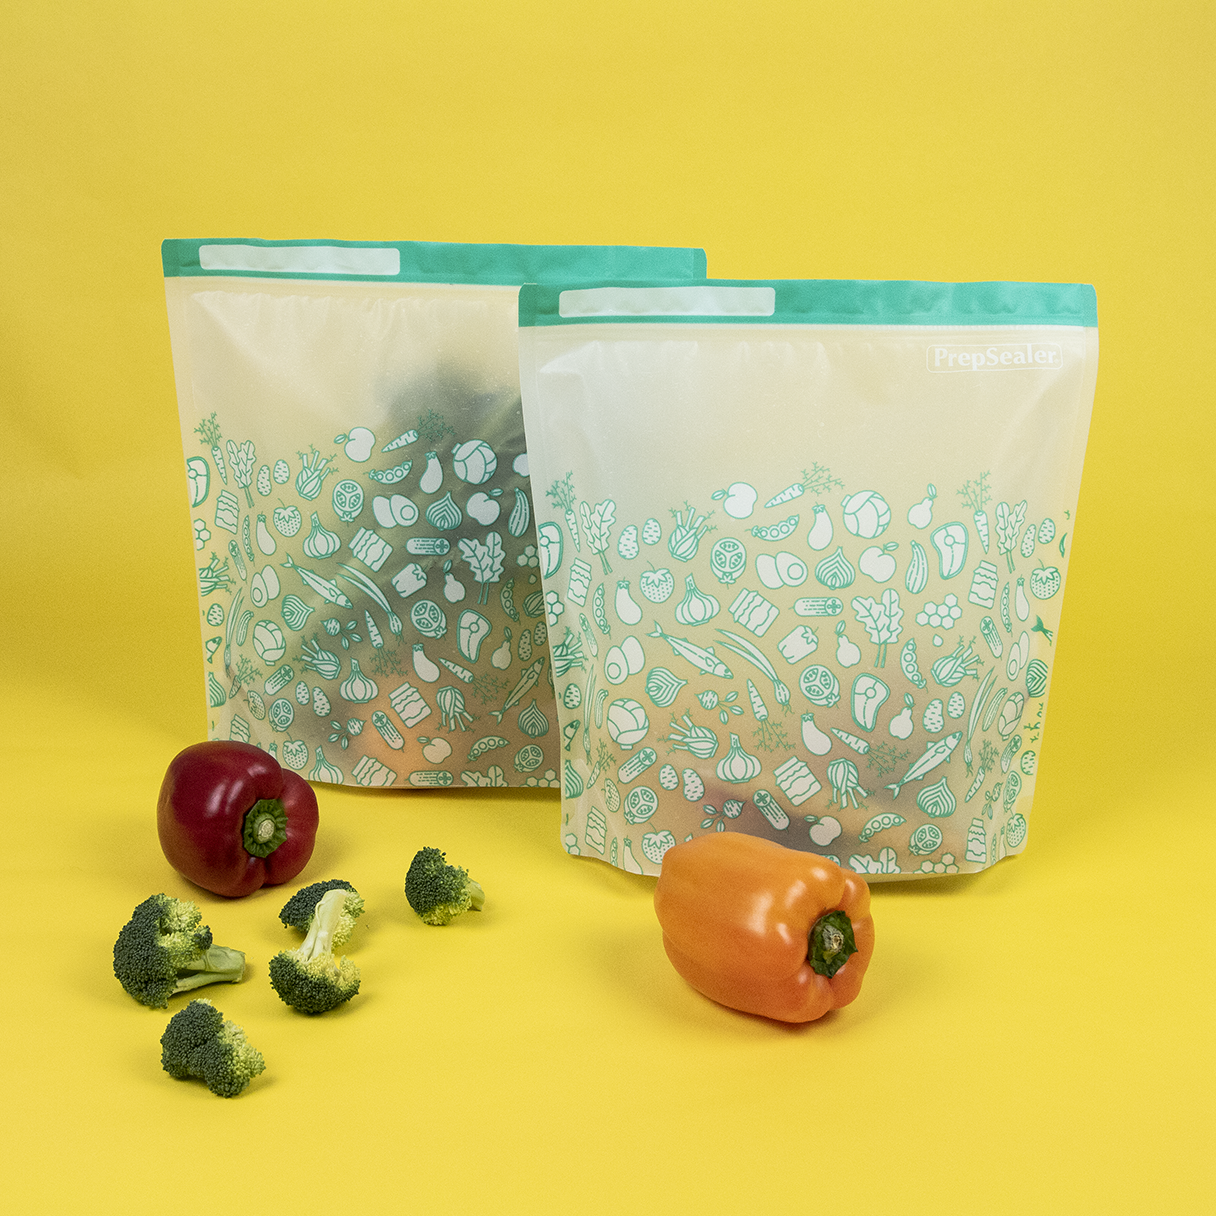 PrepSealer Food Saving Reusable Bag - Large 6pc